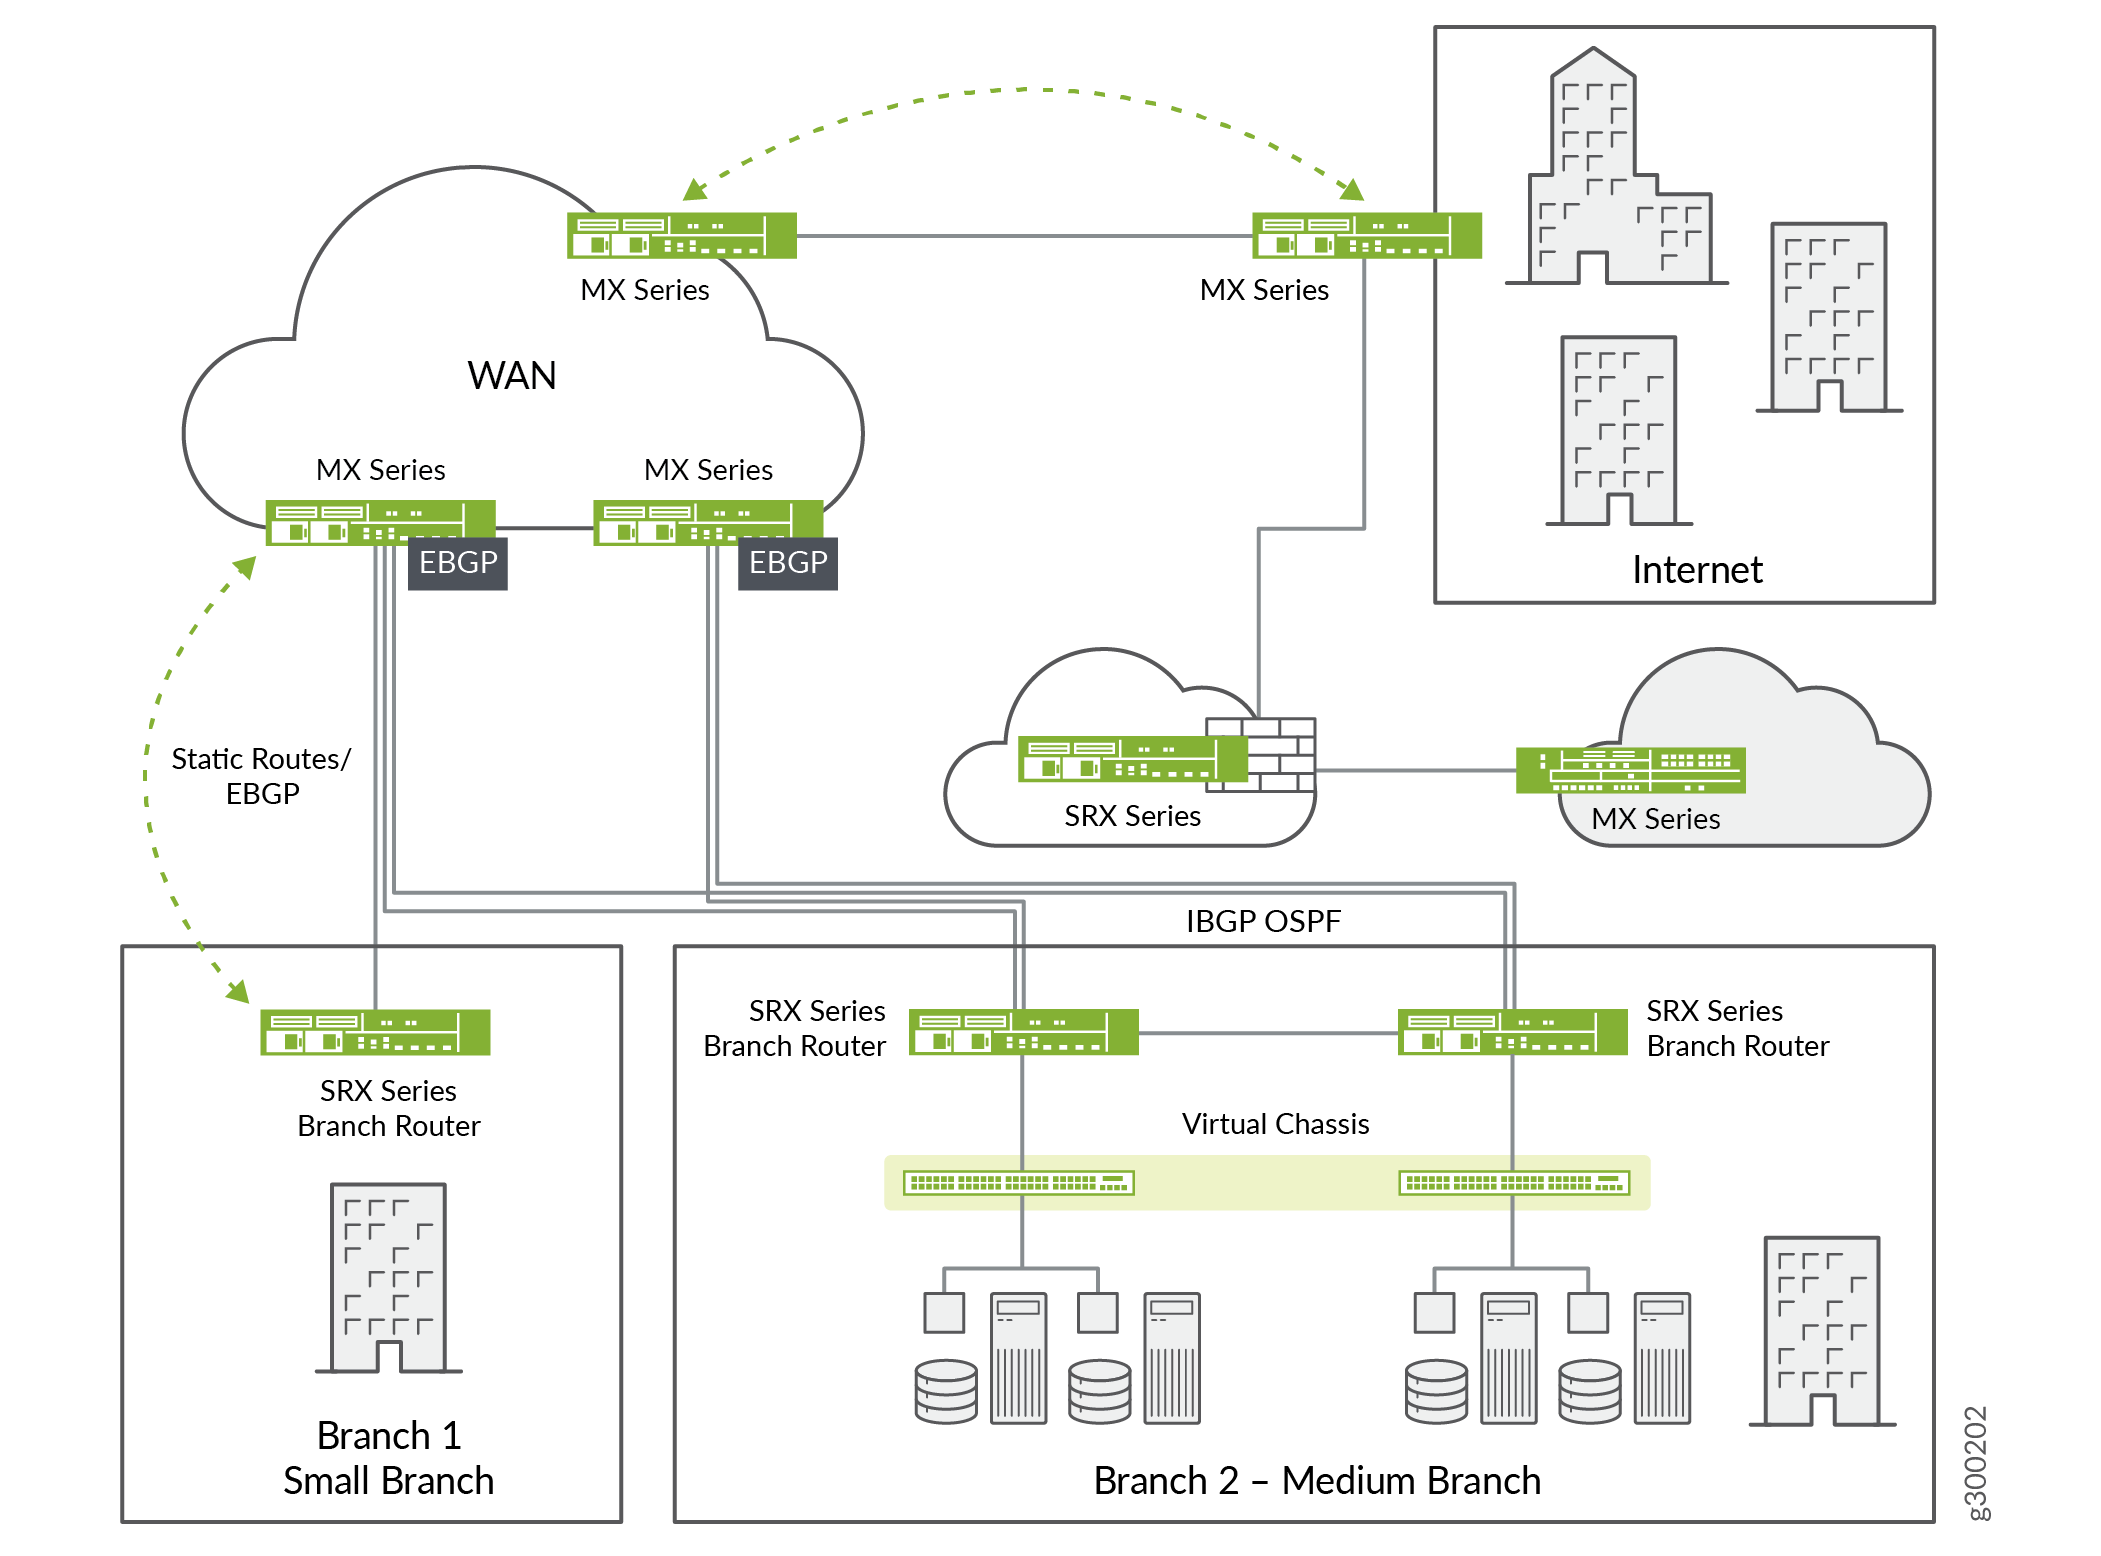 Beispiel für ein Internet-Edge-Netzwerk, bei dem
der Remote-Datenverkehr aus Zweigstellen für den Internetzugang
an die Hauptniederlassung zurückgeleitet wird